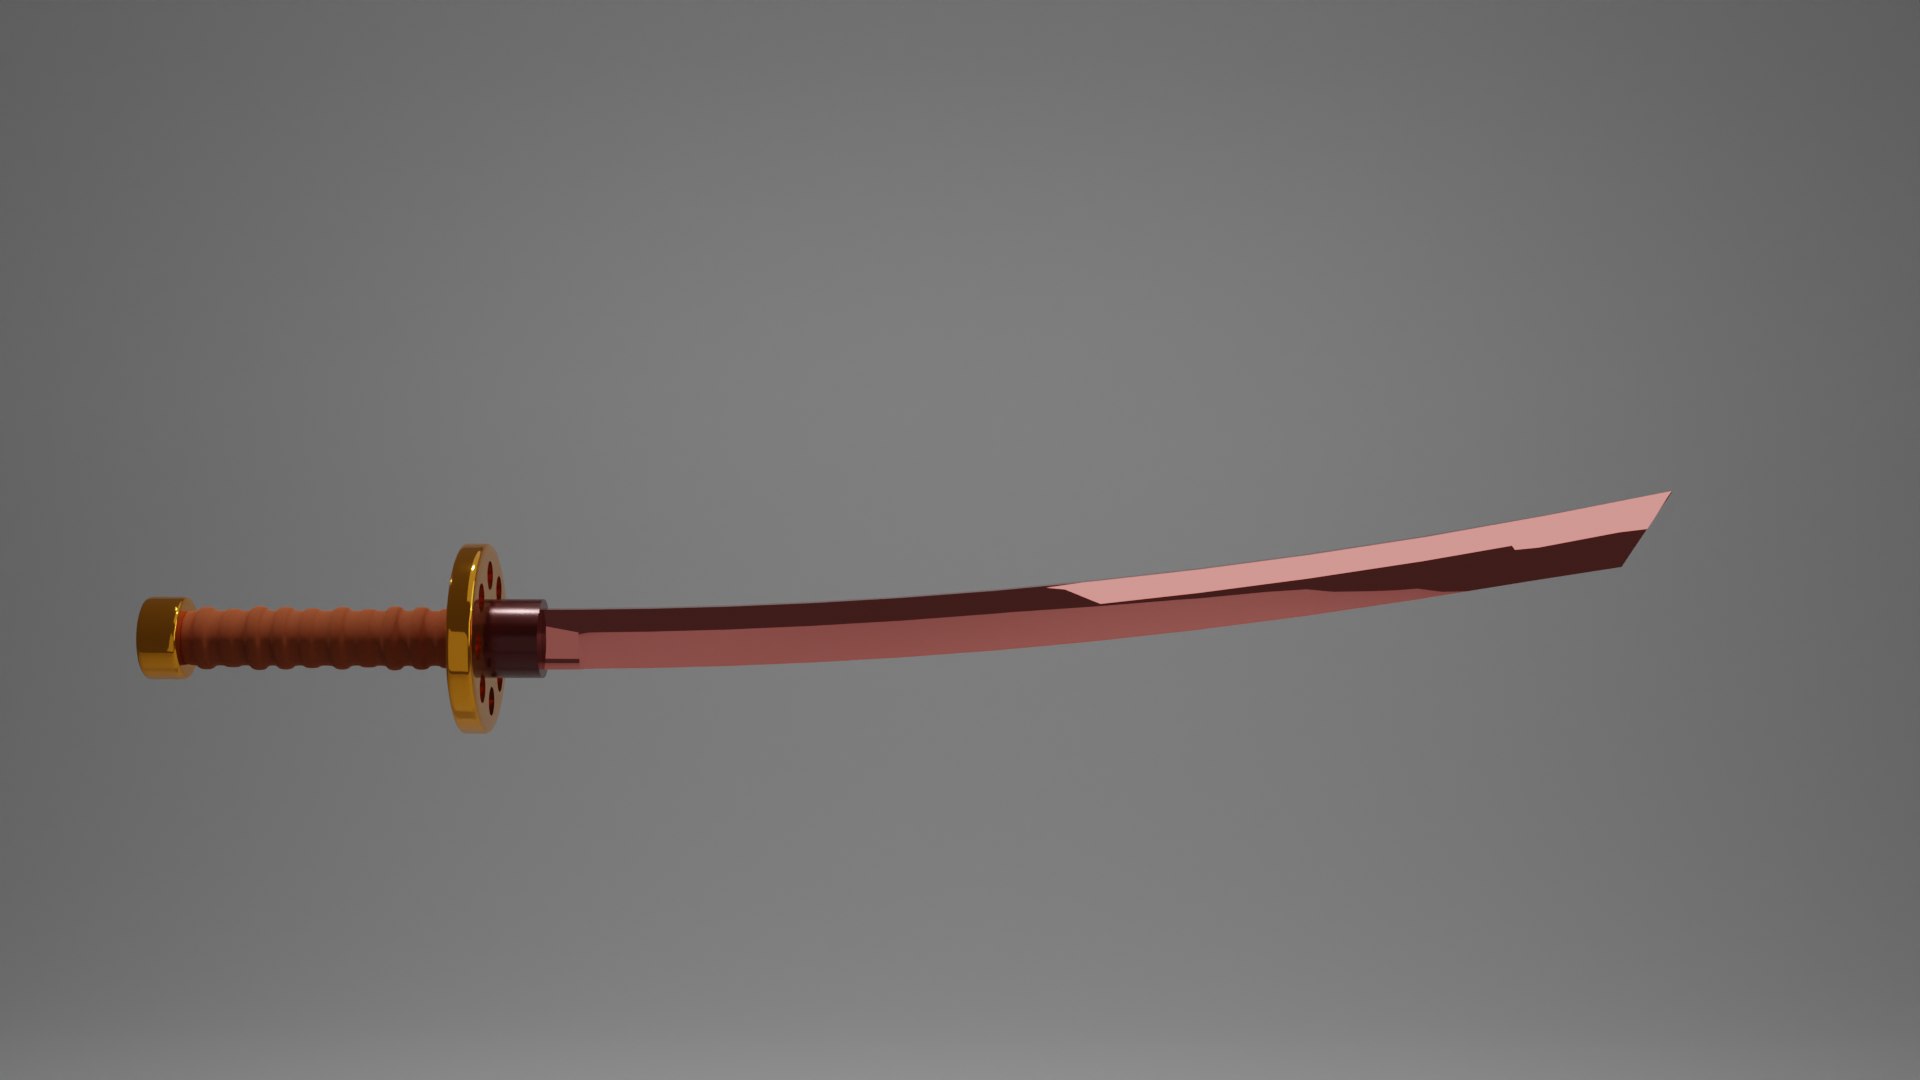 3d Red Sword 3D model - TurboSquid 2093806